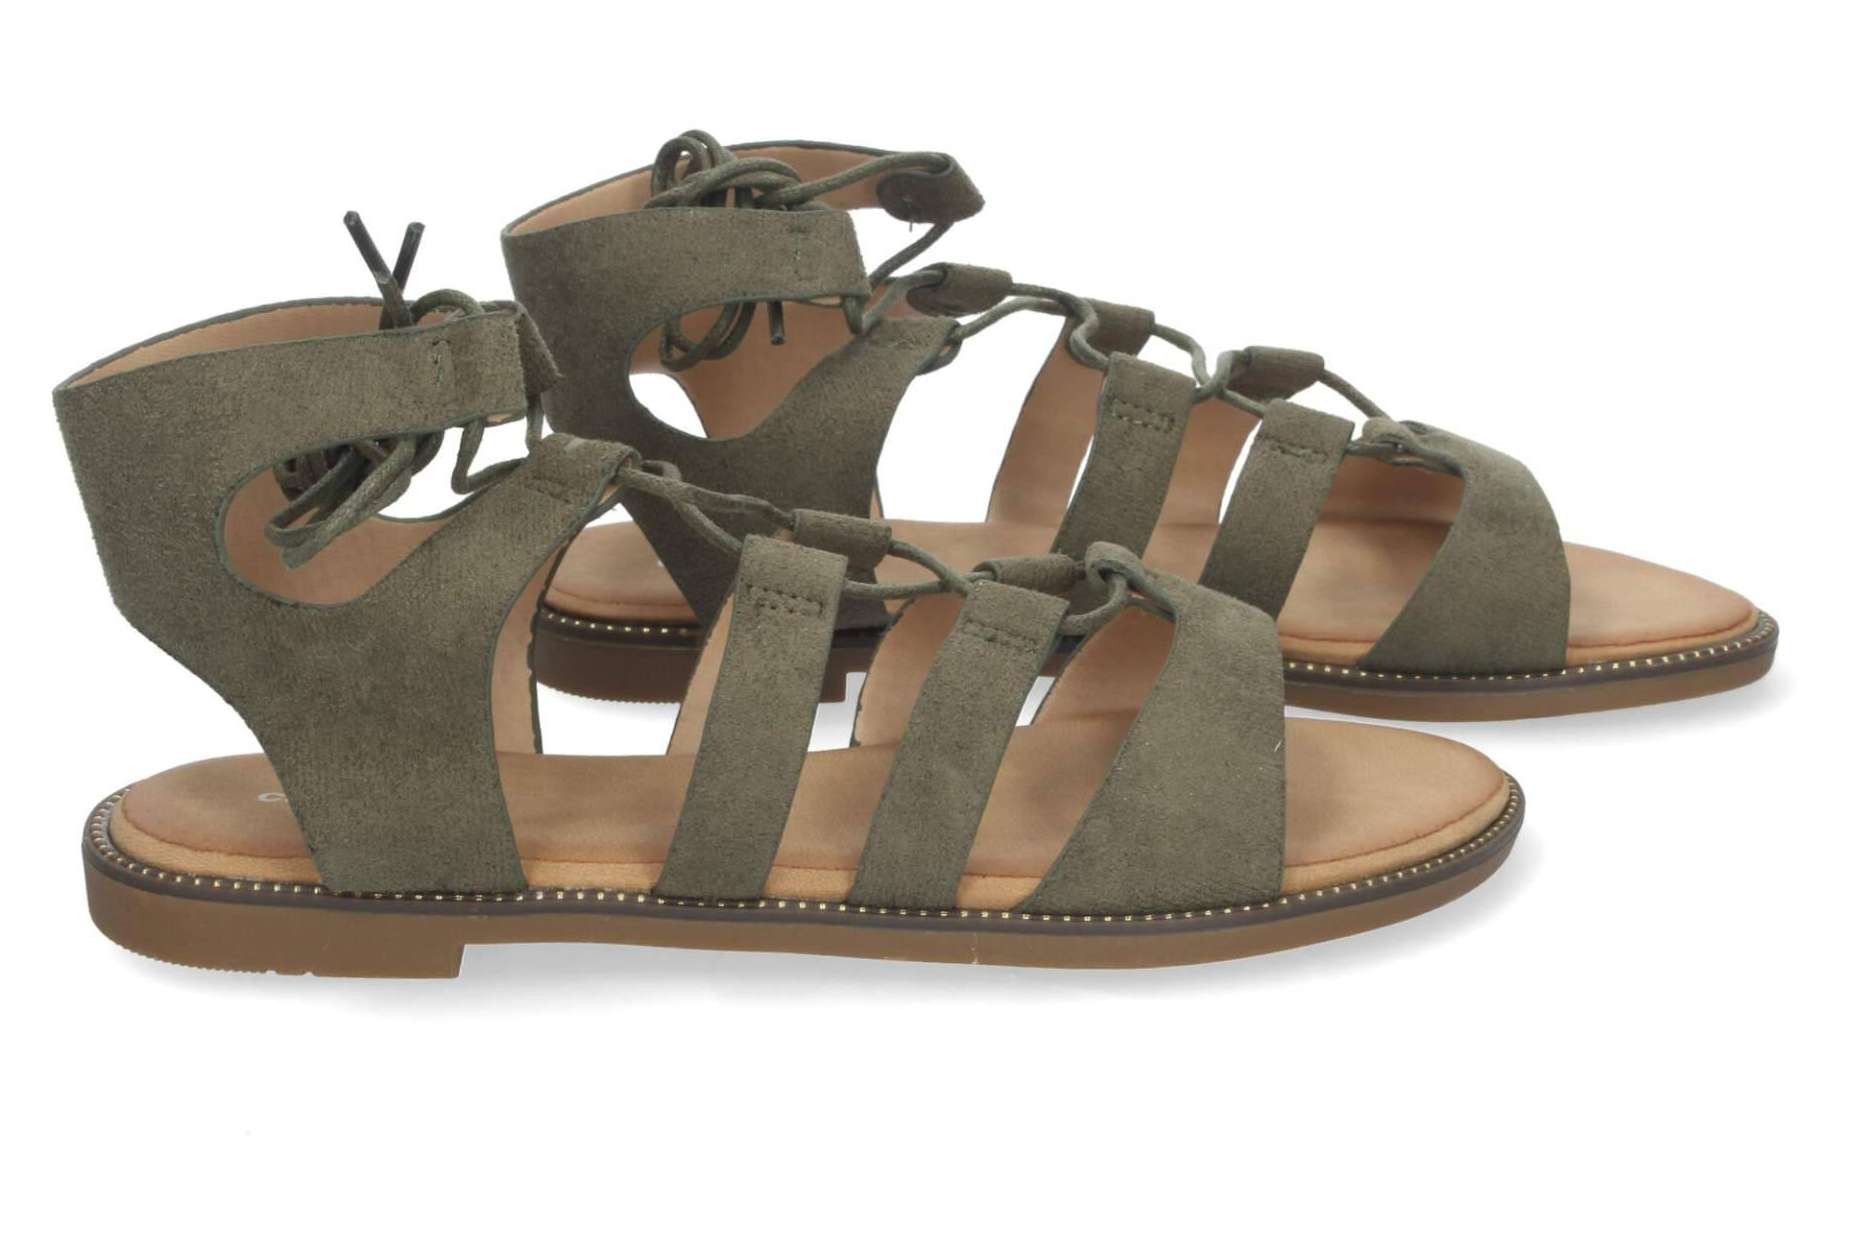  Por qué las sandalias planas son un calzado ideal para usar en verano 